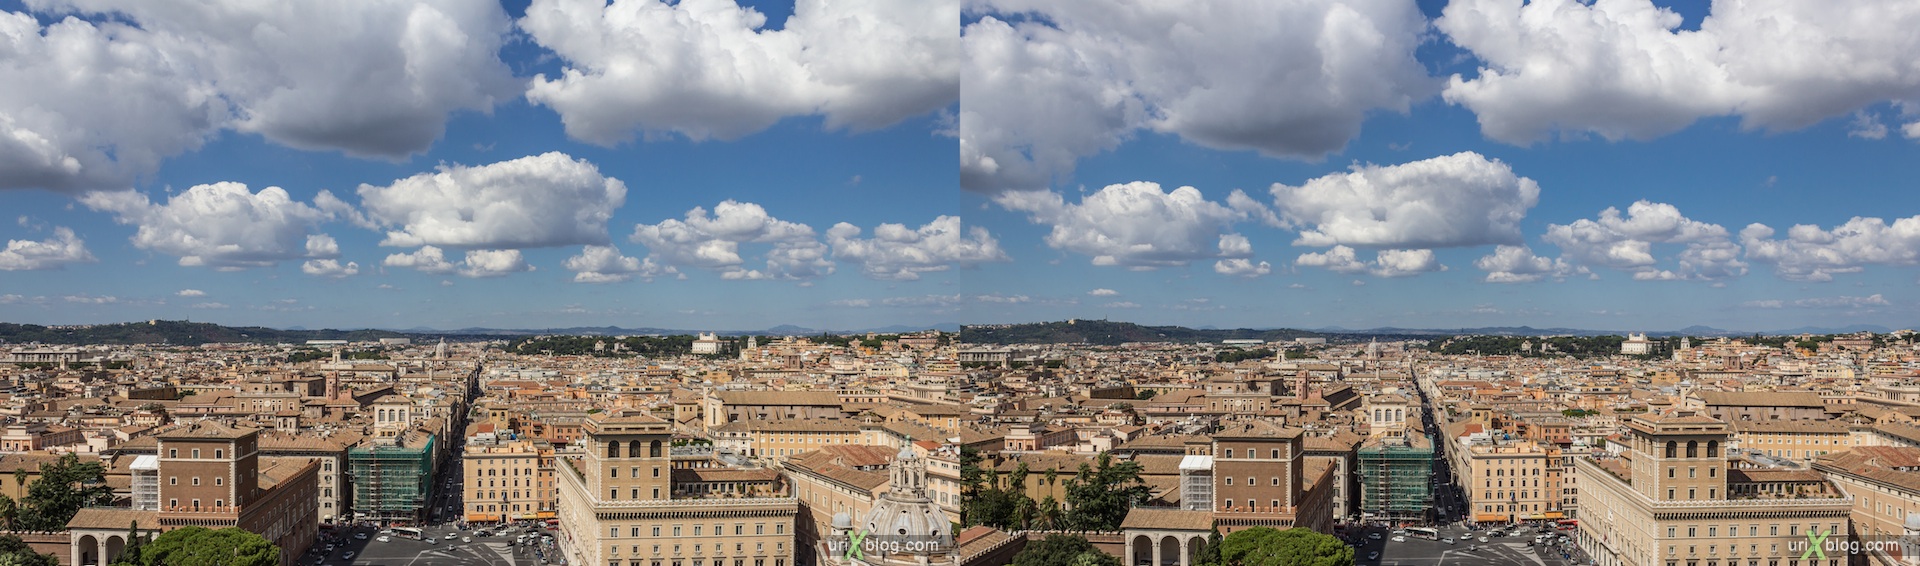 2012, Витториано, Монумент Виктора Эммануила II, крыша, смотровая площадка, гиперстерео, Рим, Италия, осень, 3D, перекрёстные стереопары, стерео, стереопара, стереопары